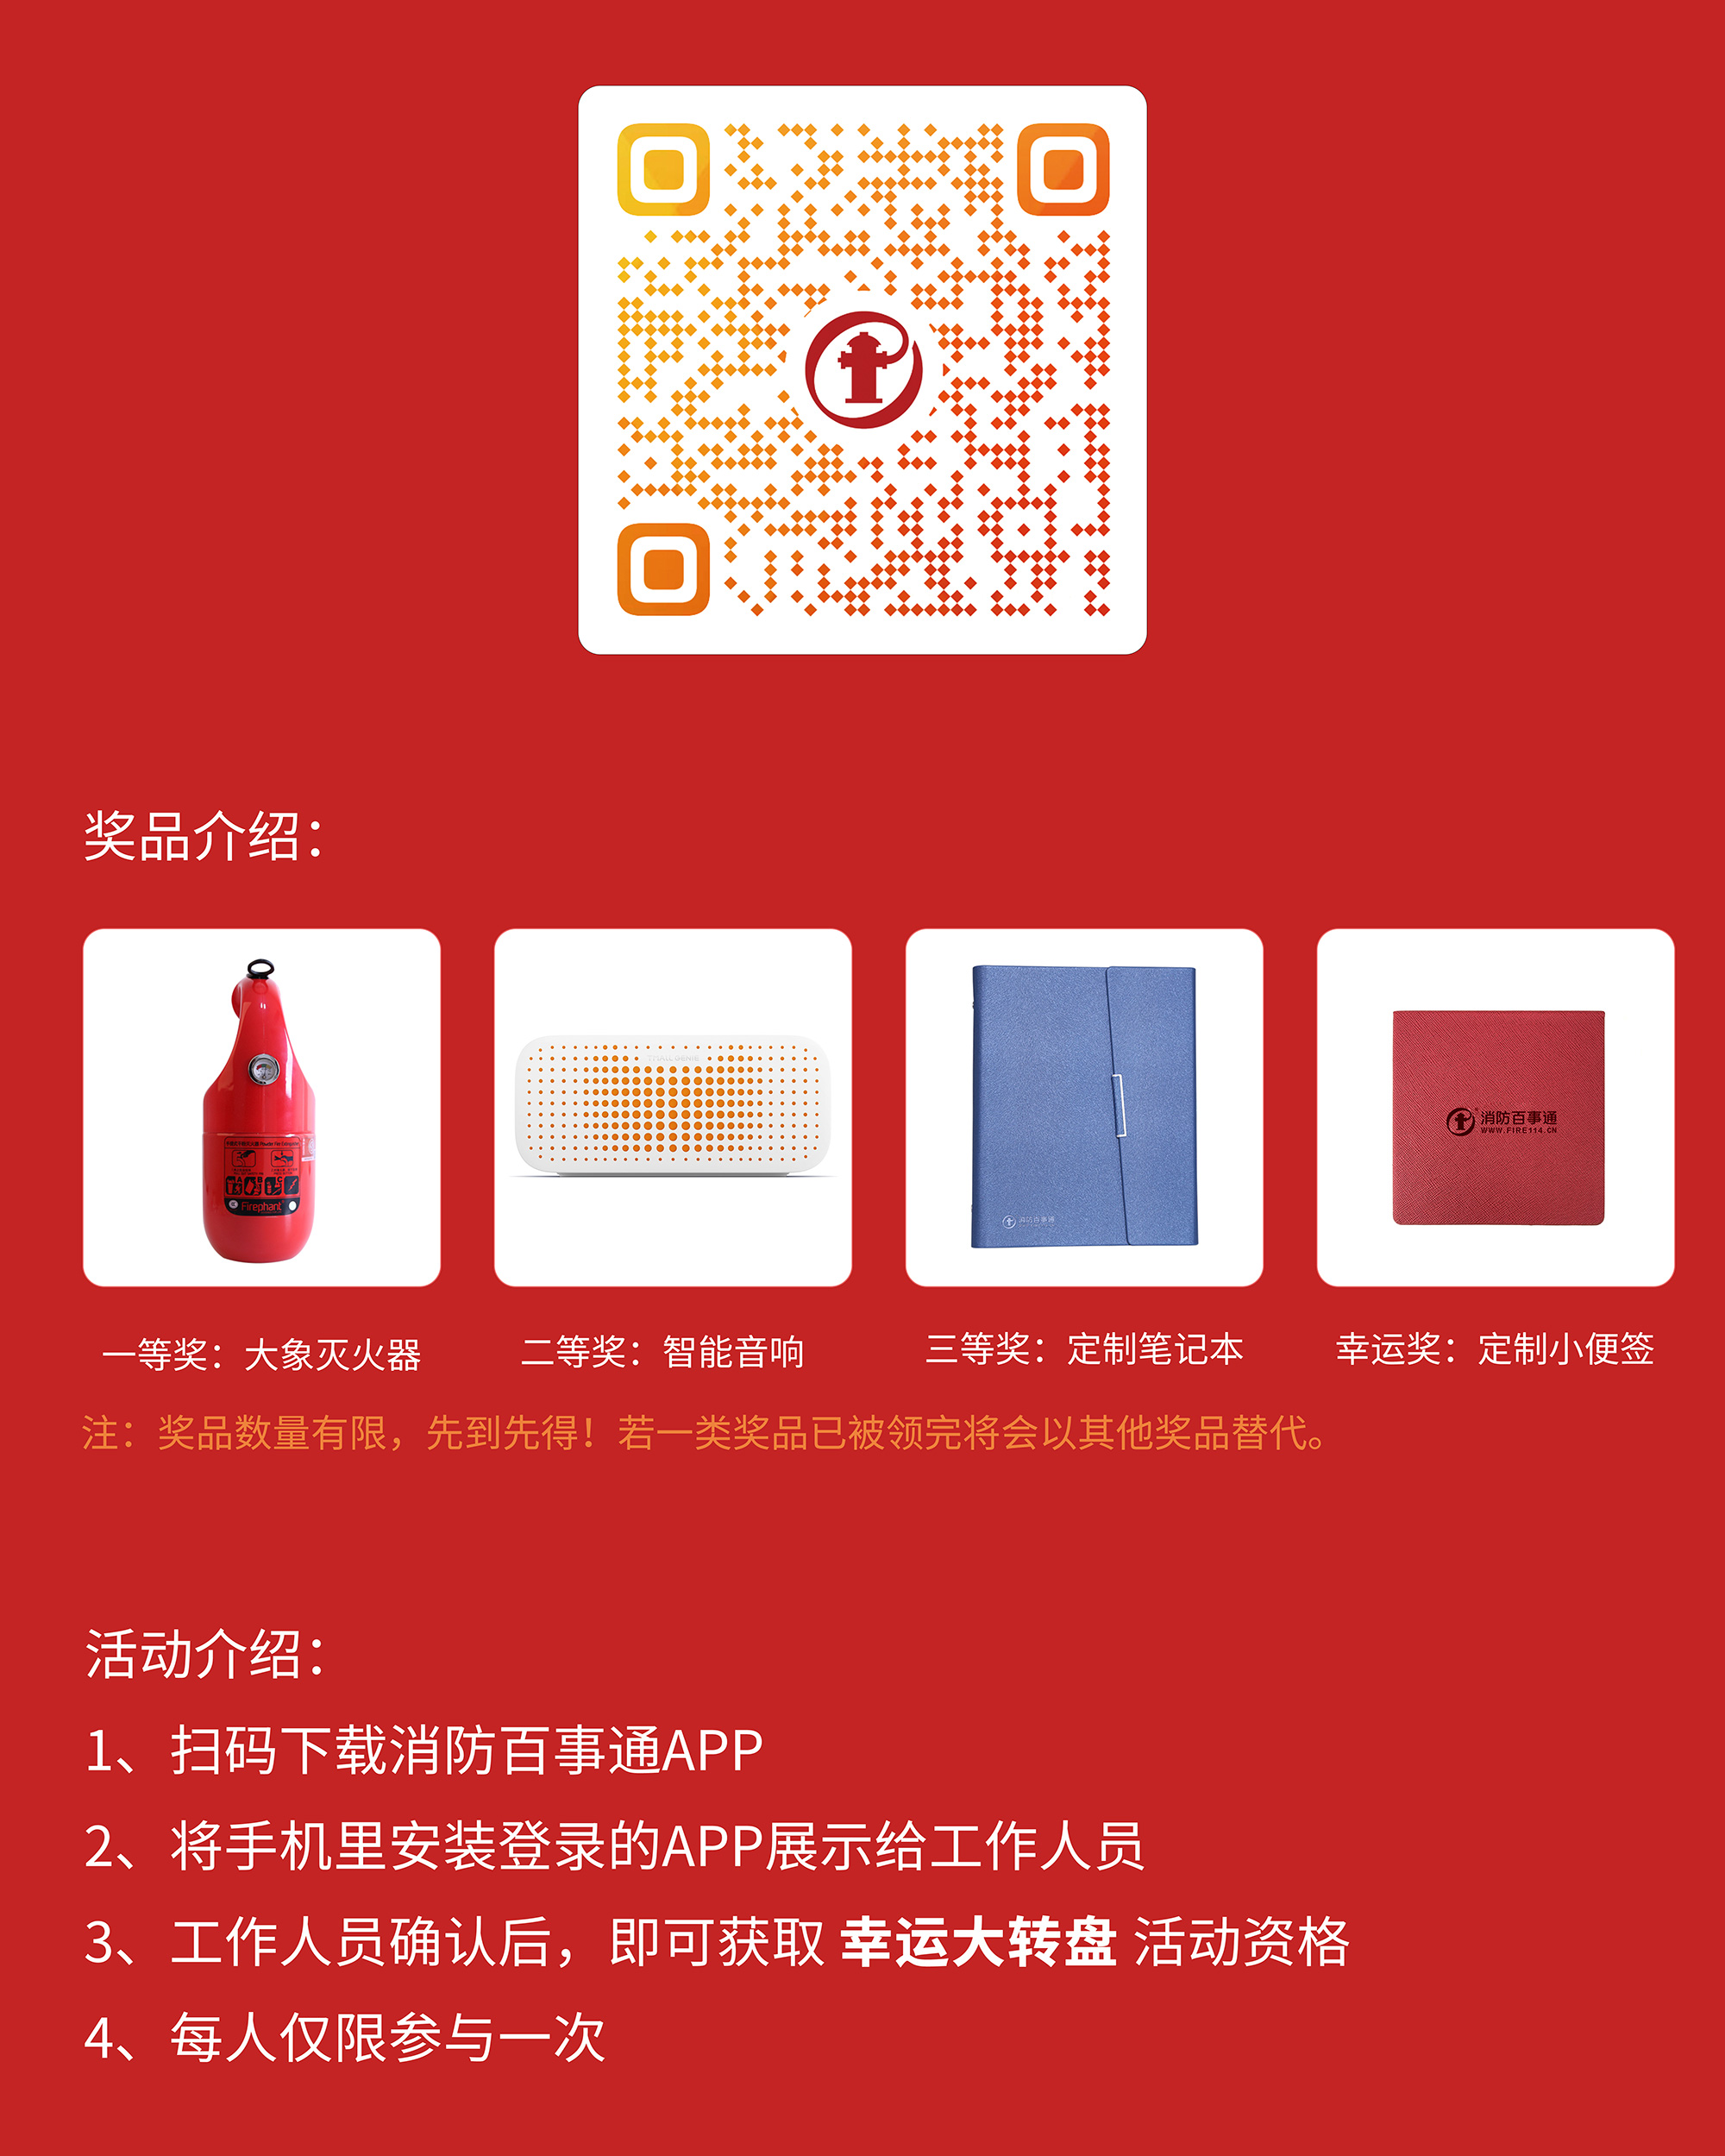 消防百事通·当宁消防网与您相约2020上海国际消防展